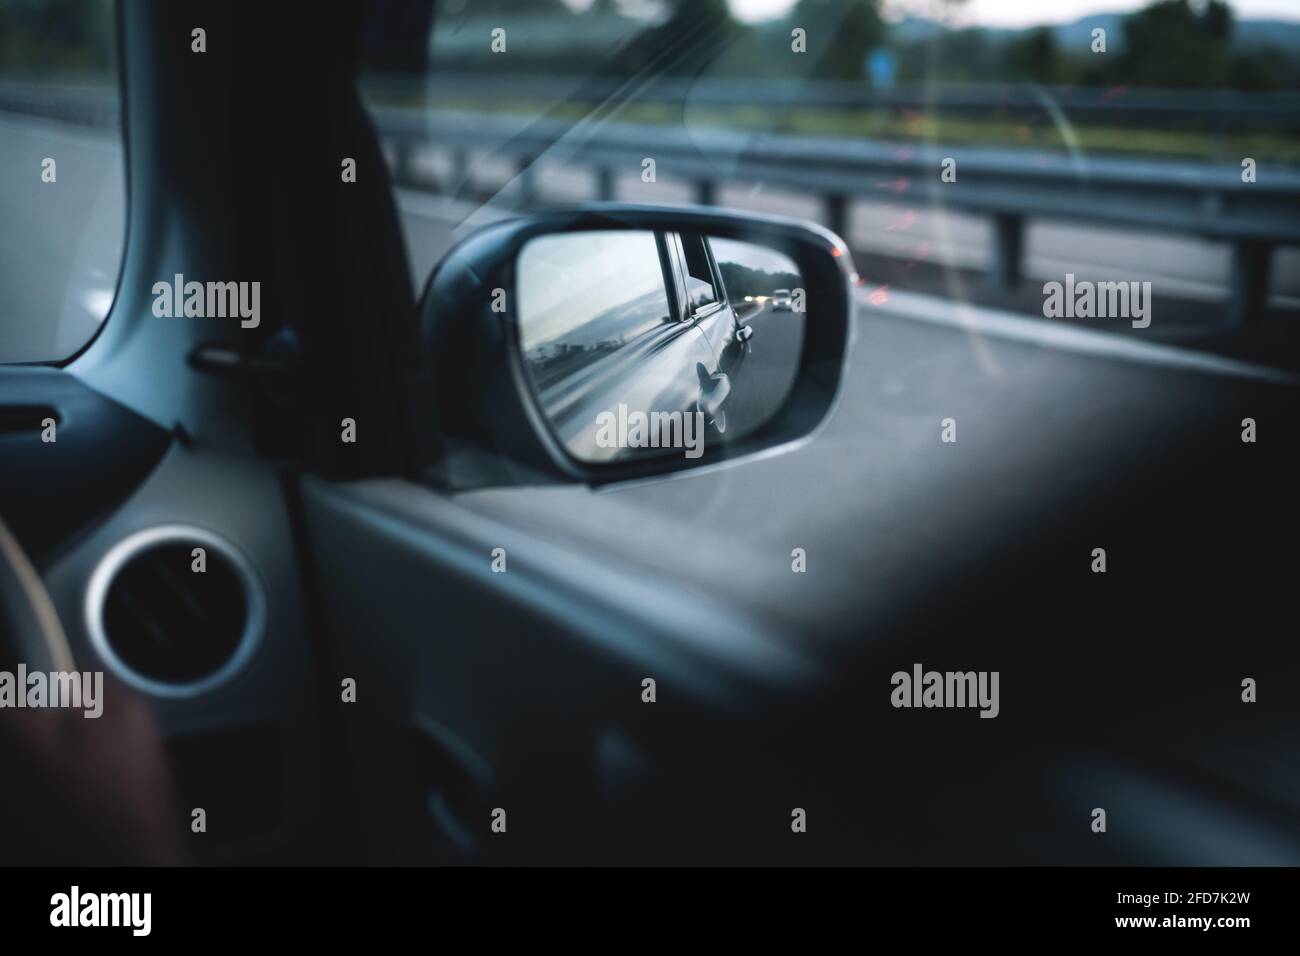 Auto-Seitenspiegel und die reflektierende Abendsonne von der Karosserie und  glühende in der Autobahn. Schnell bewegende Automobil-Konzept. Seite  Spiegel Sicht von Stockfotografie - Alamy